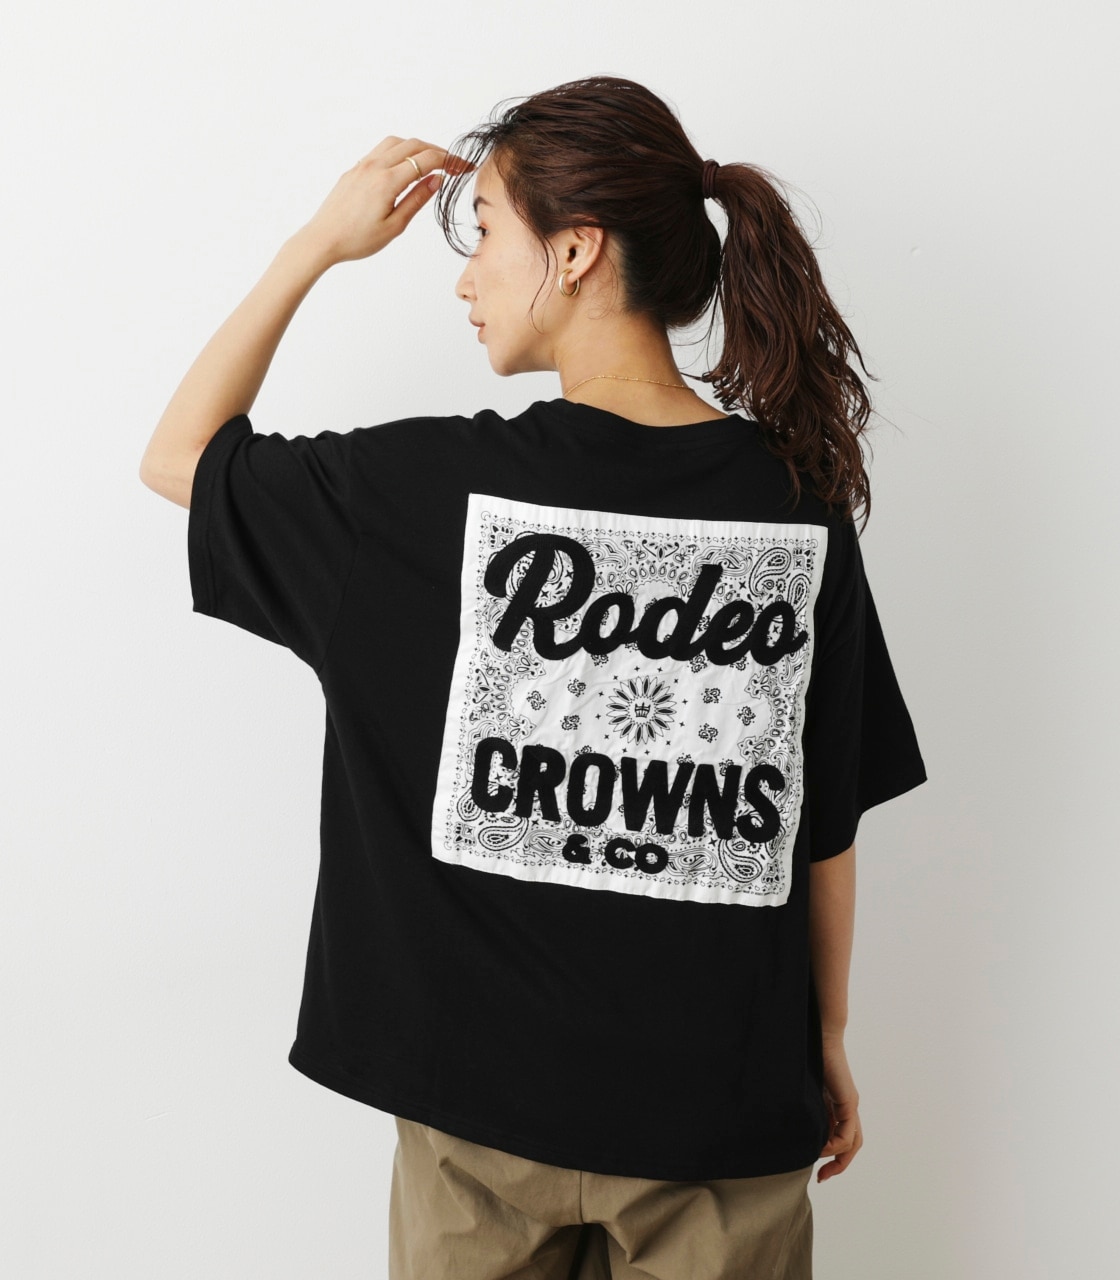 RODEO CROWNSメンズ ロングTシャツ Lサイズ - Tシャツ